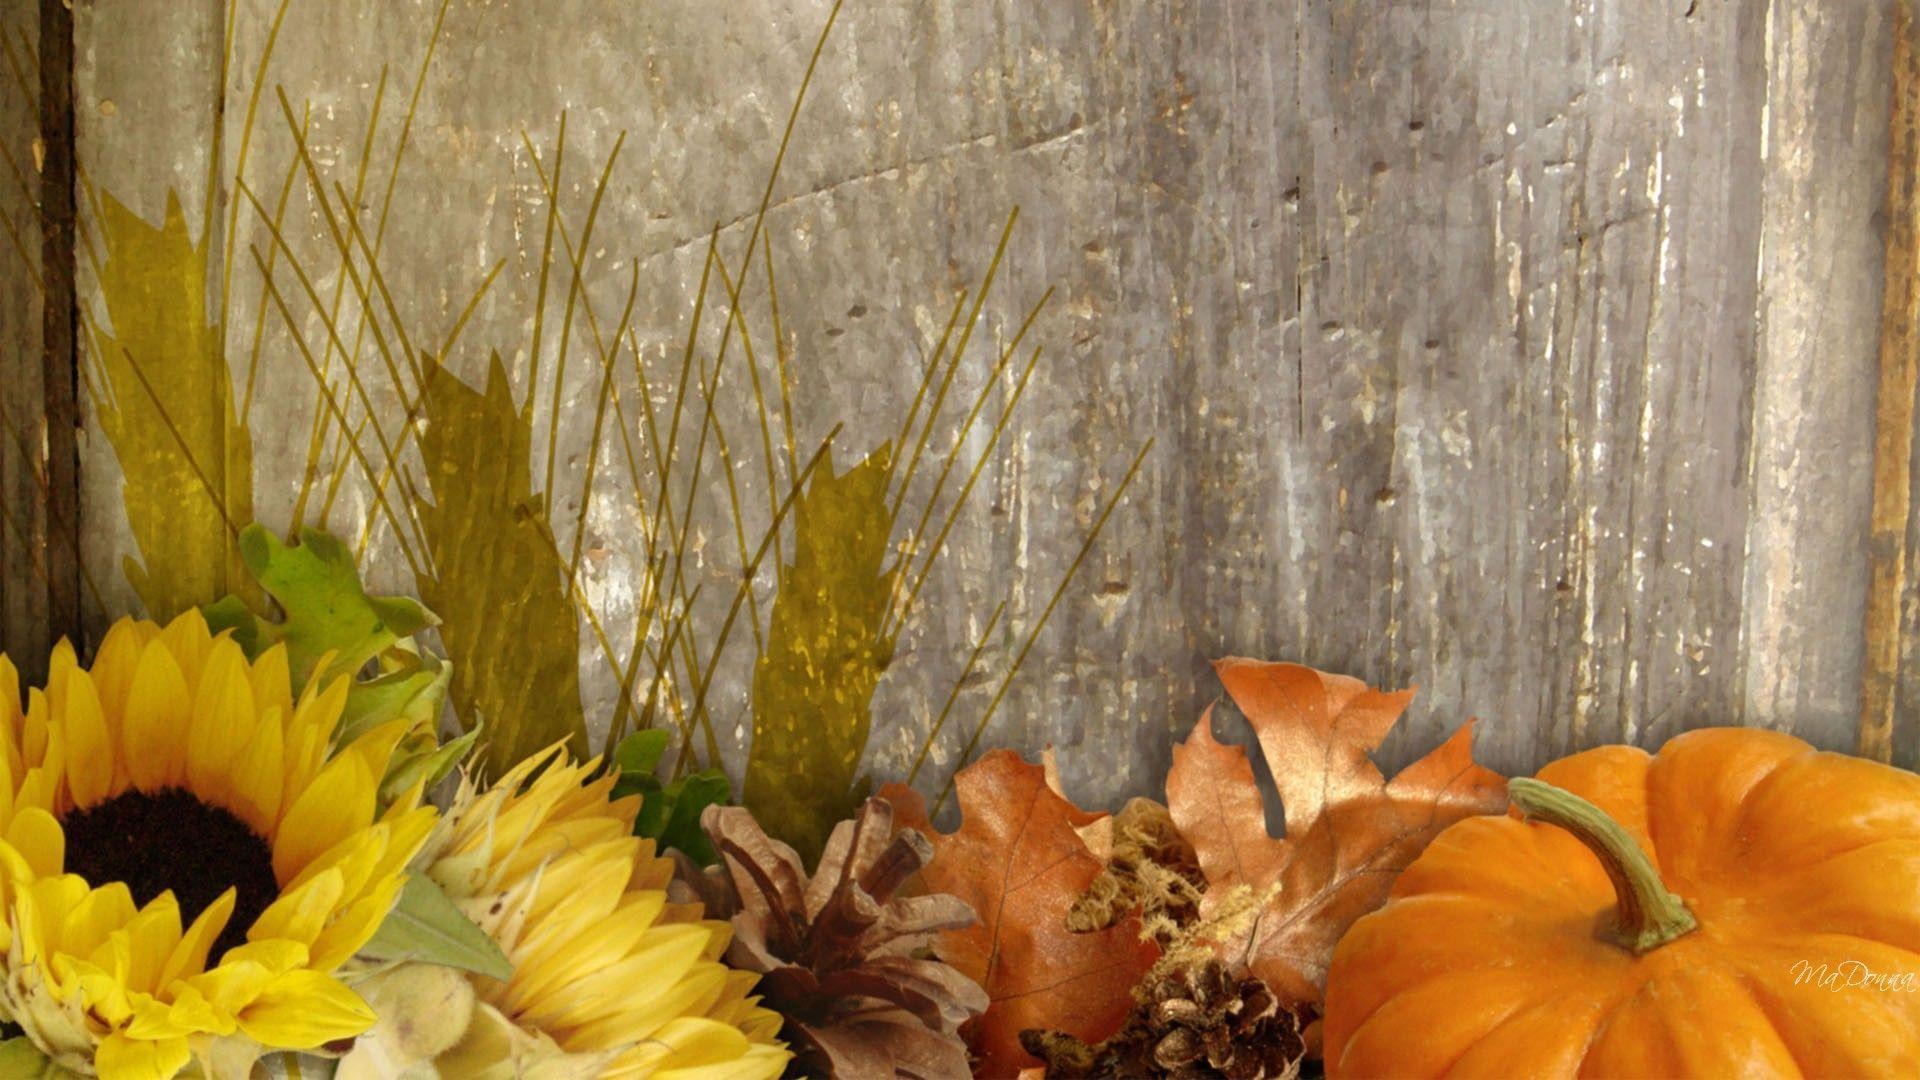 Mùa thu (Autumn): Mùa thu là thời điểm lý tưởng để tận hưởng sự yên bình và thanh tao của thiên nhiên. Hãy xem những hình ảnh về mùa thu đầy hoài niệm và cảm nhận sự tinh tế và lãng mạn của mùa này.